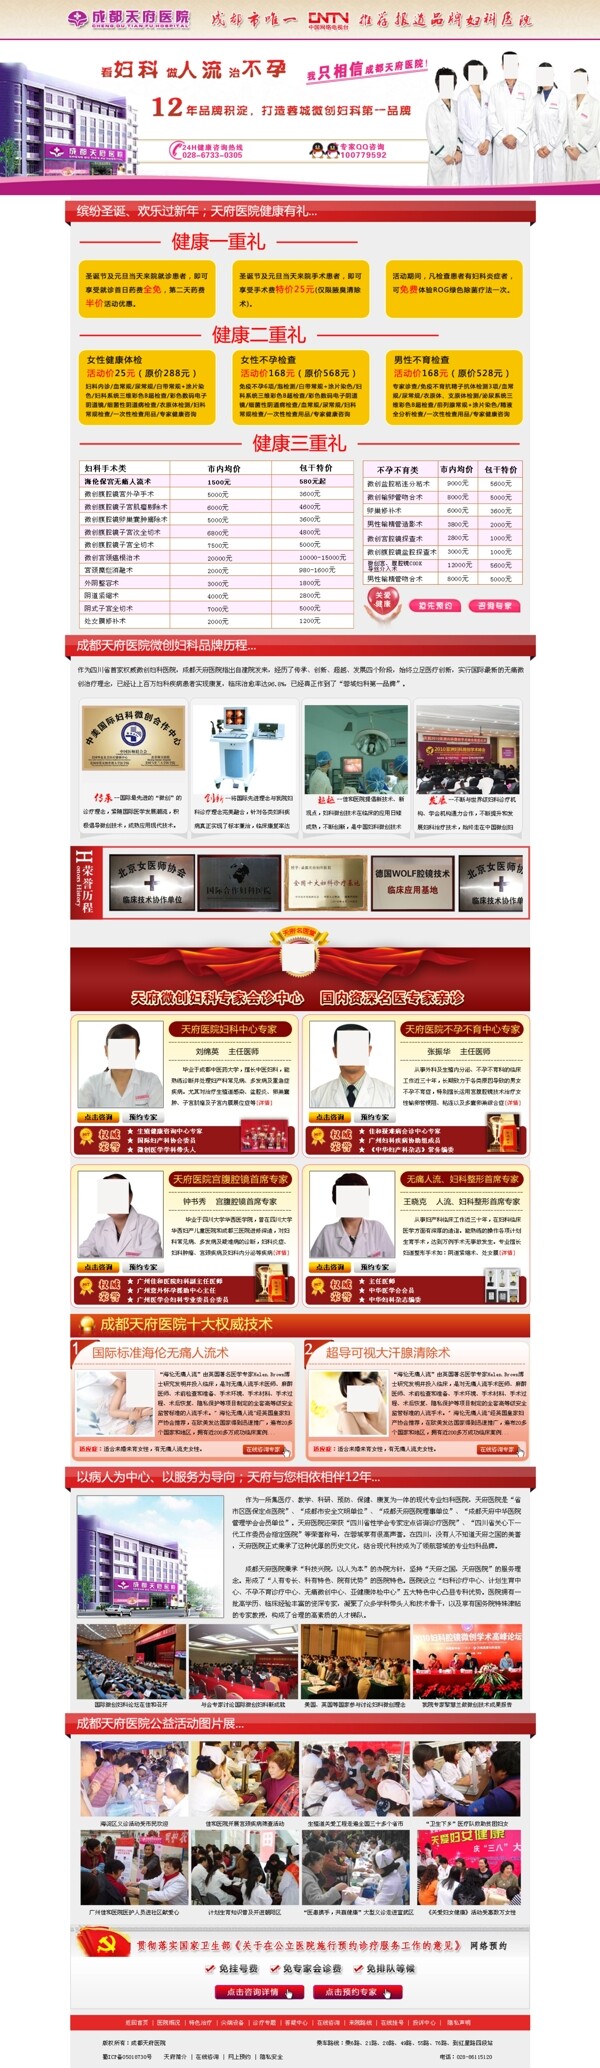 医院圣诞专题活动网页模板图片